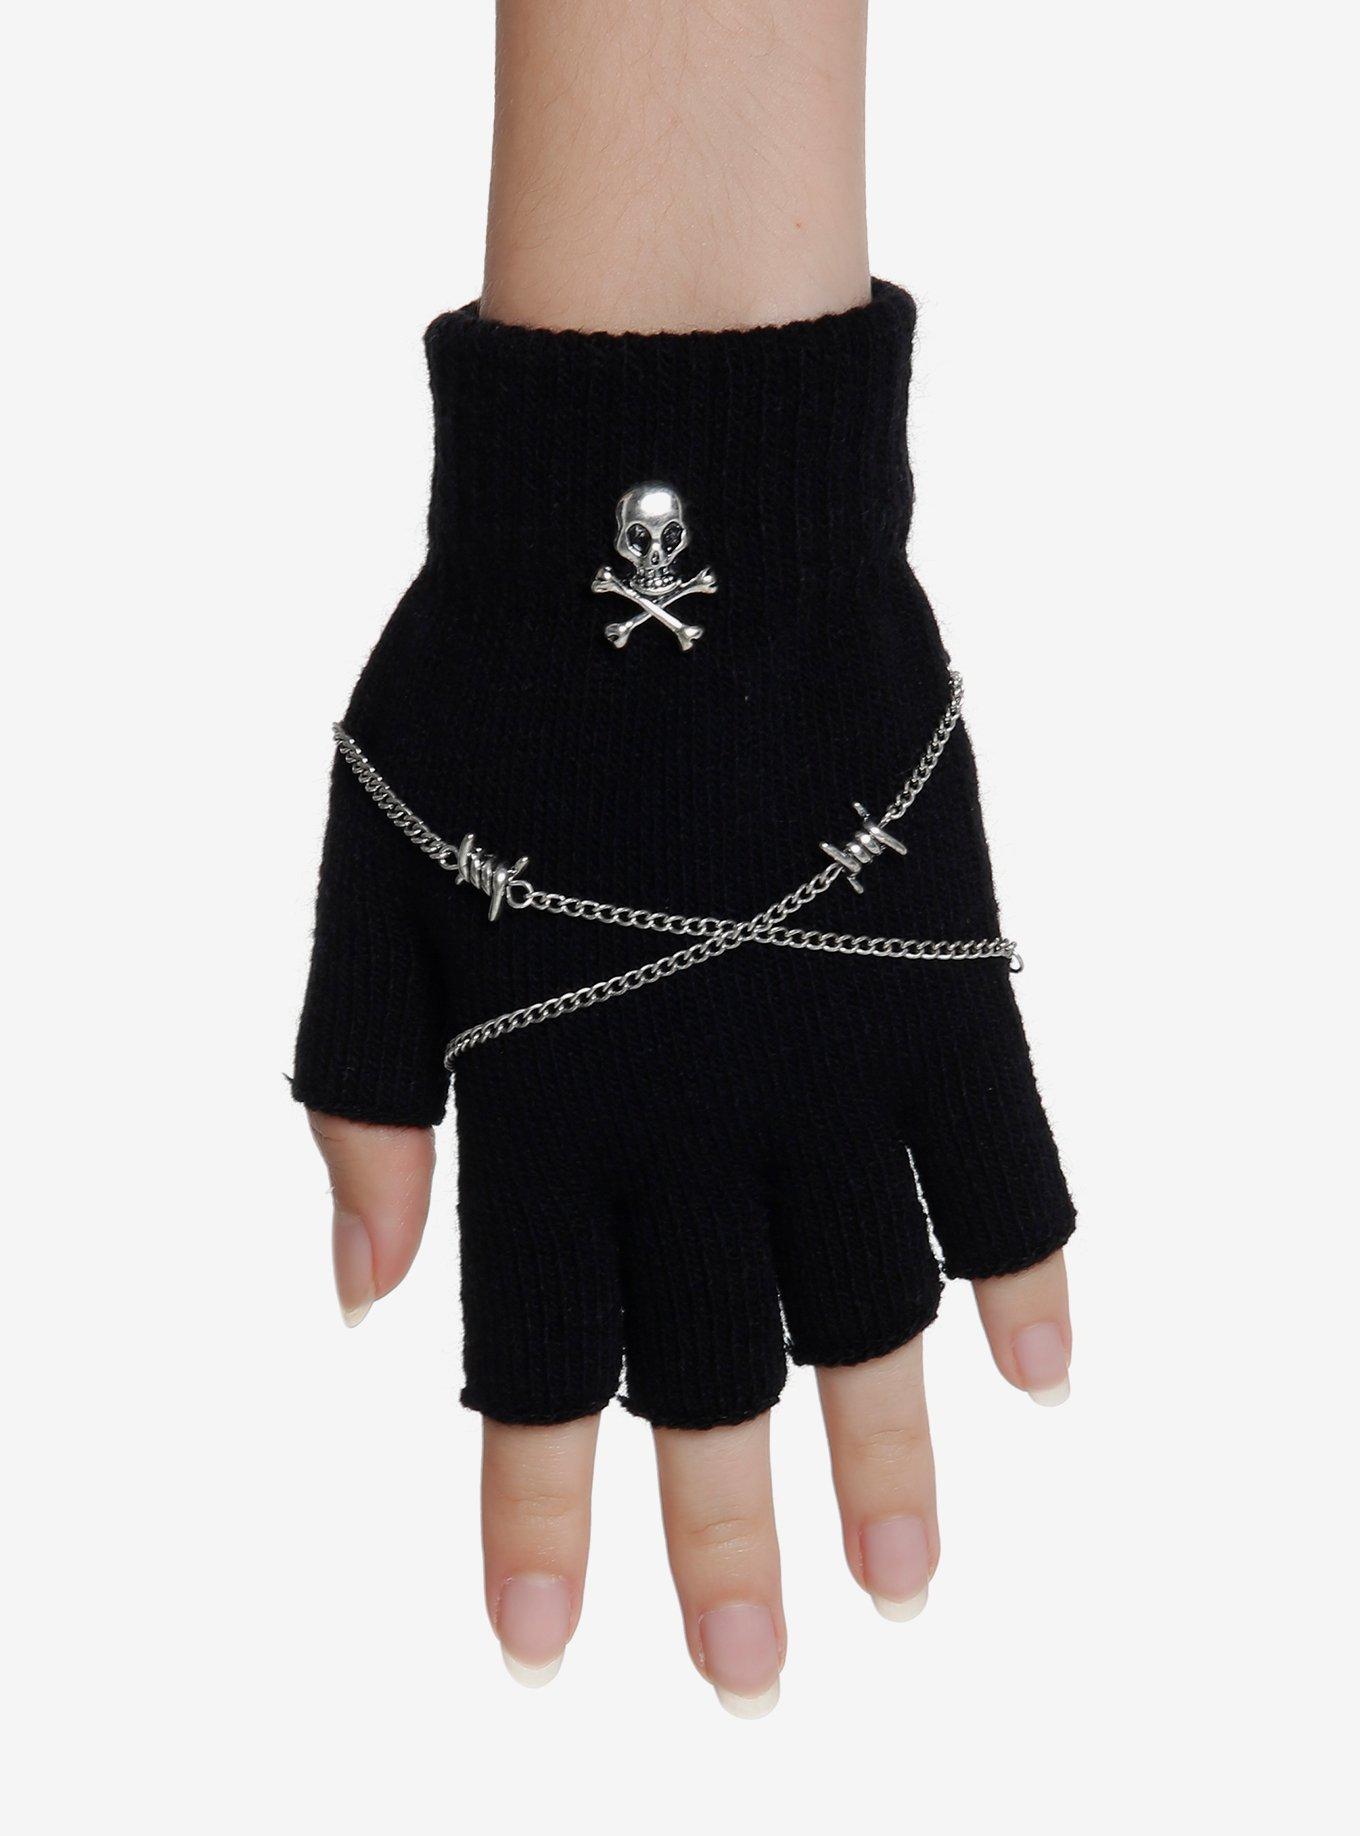 Skull Barbed Wire Chain Fingerless Gloves, , alternate